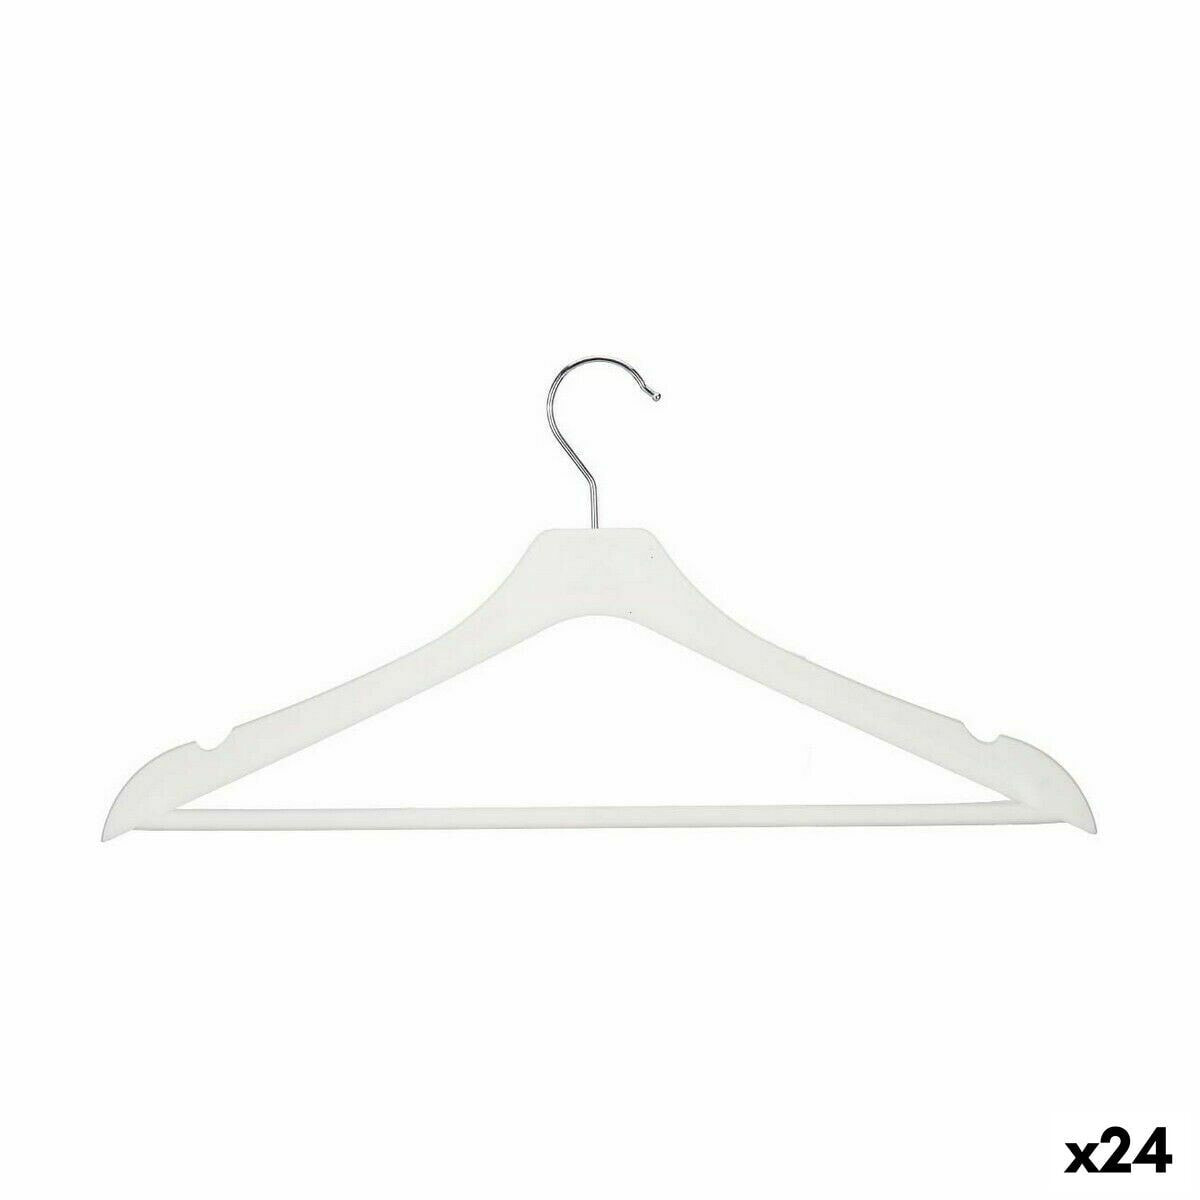 Set of Clothes Hangers White Plastic 44 x 21 x 1,3 cm (24 Units)